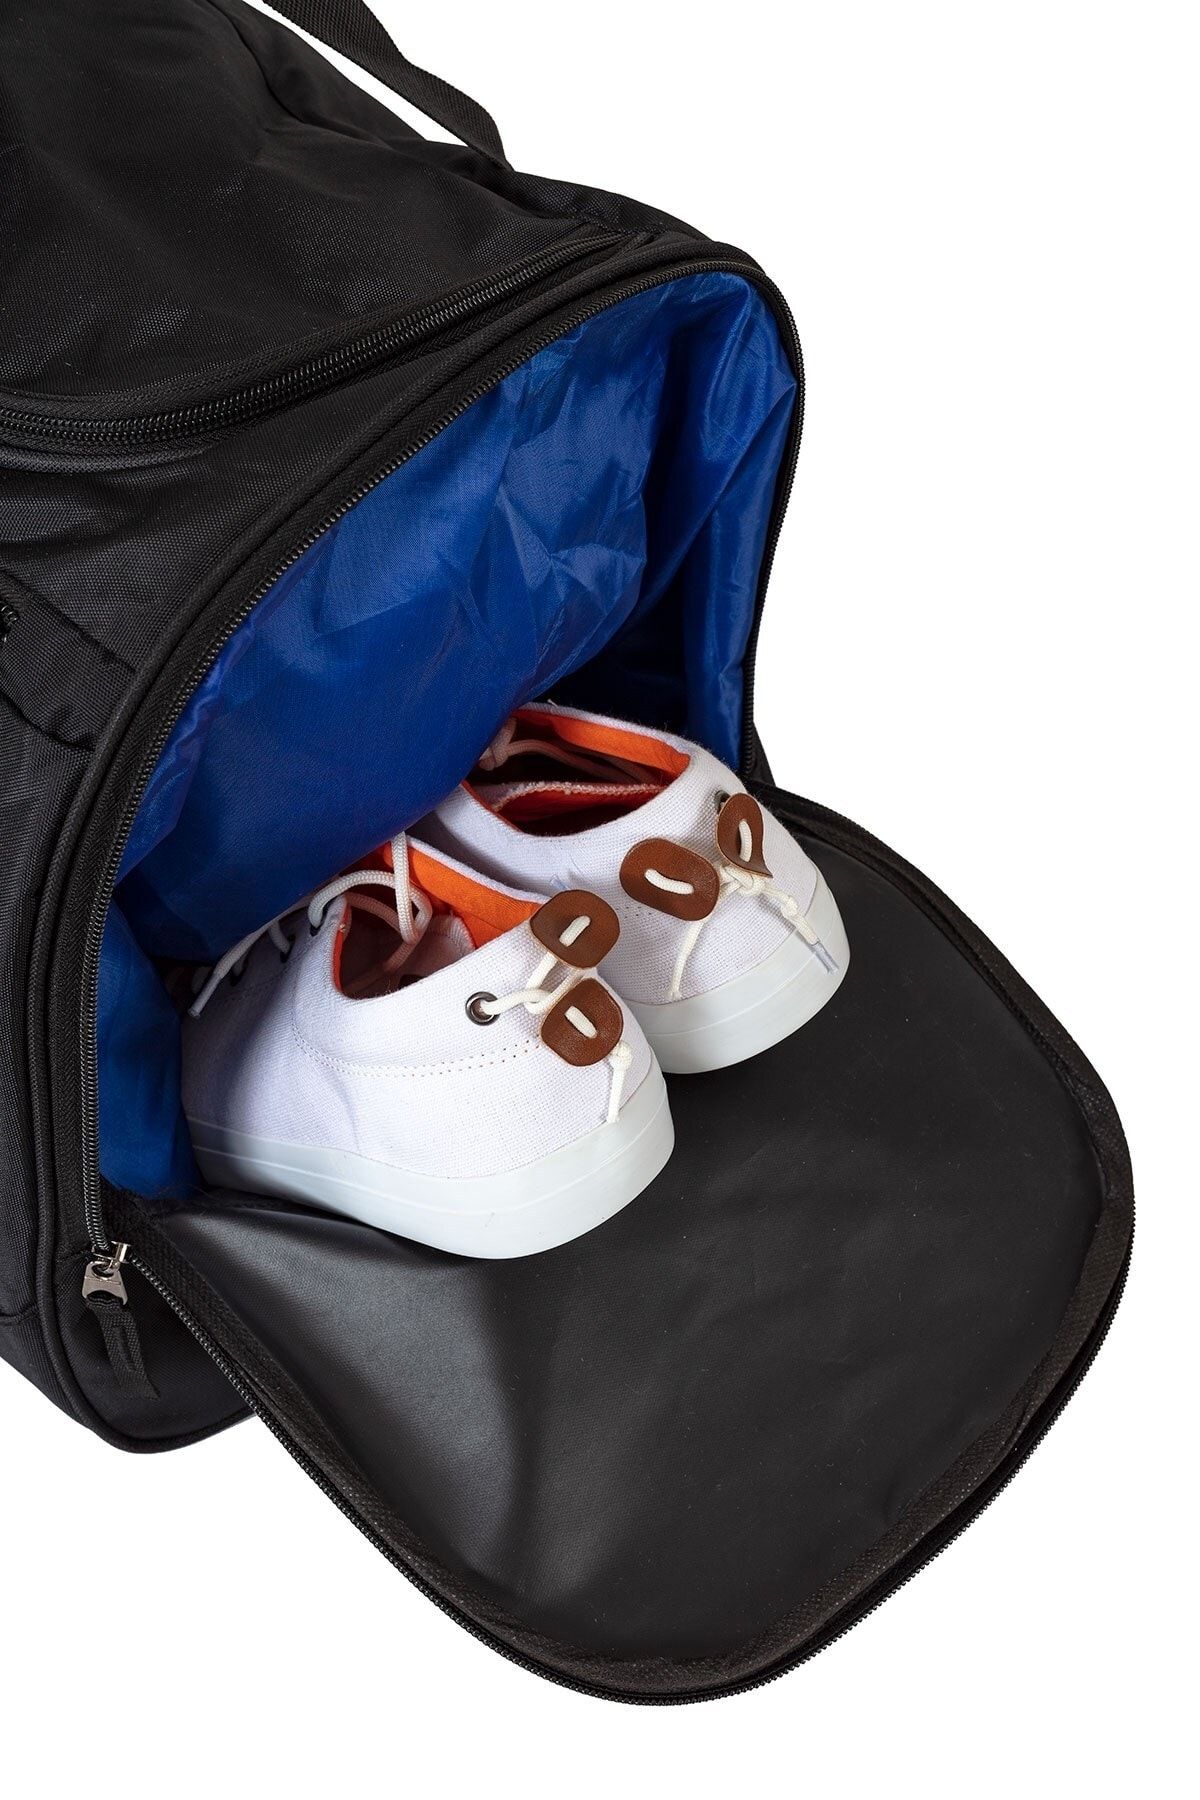 Solo Bag Ayakkabı Gözlü Havalandırmalı Spor Çanta